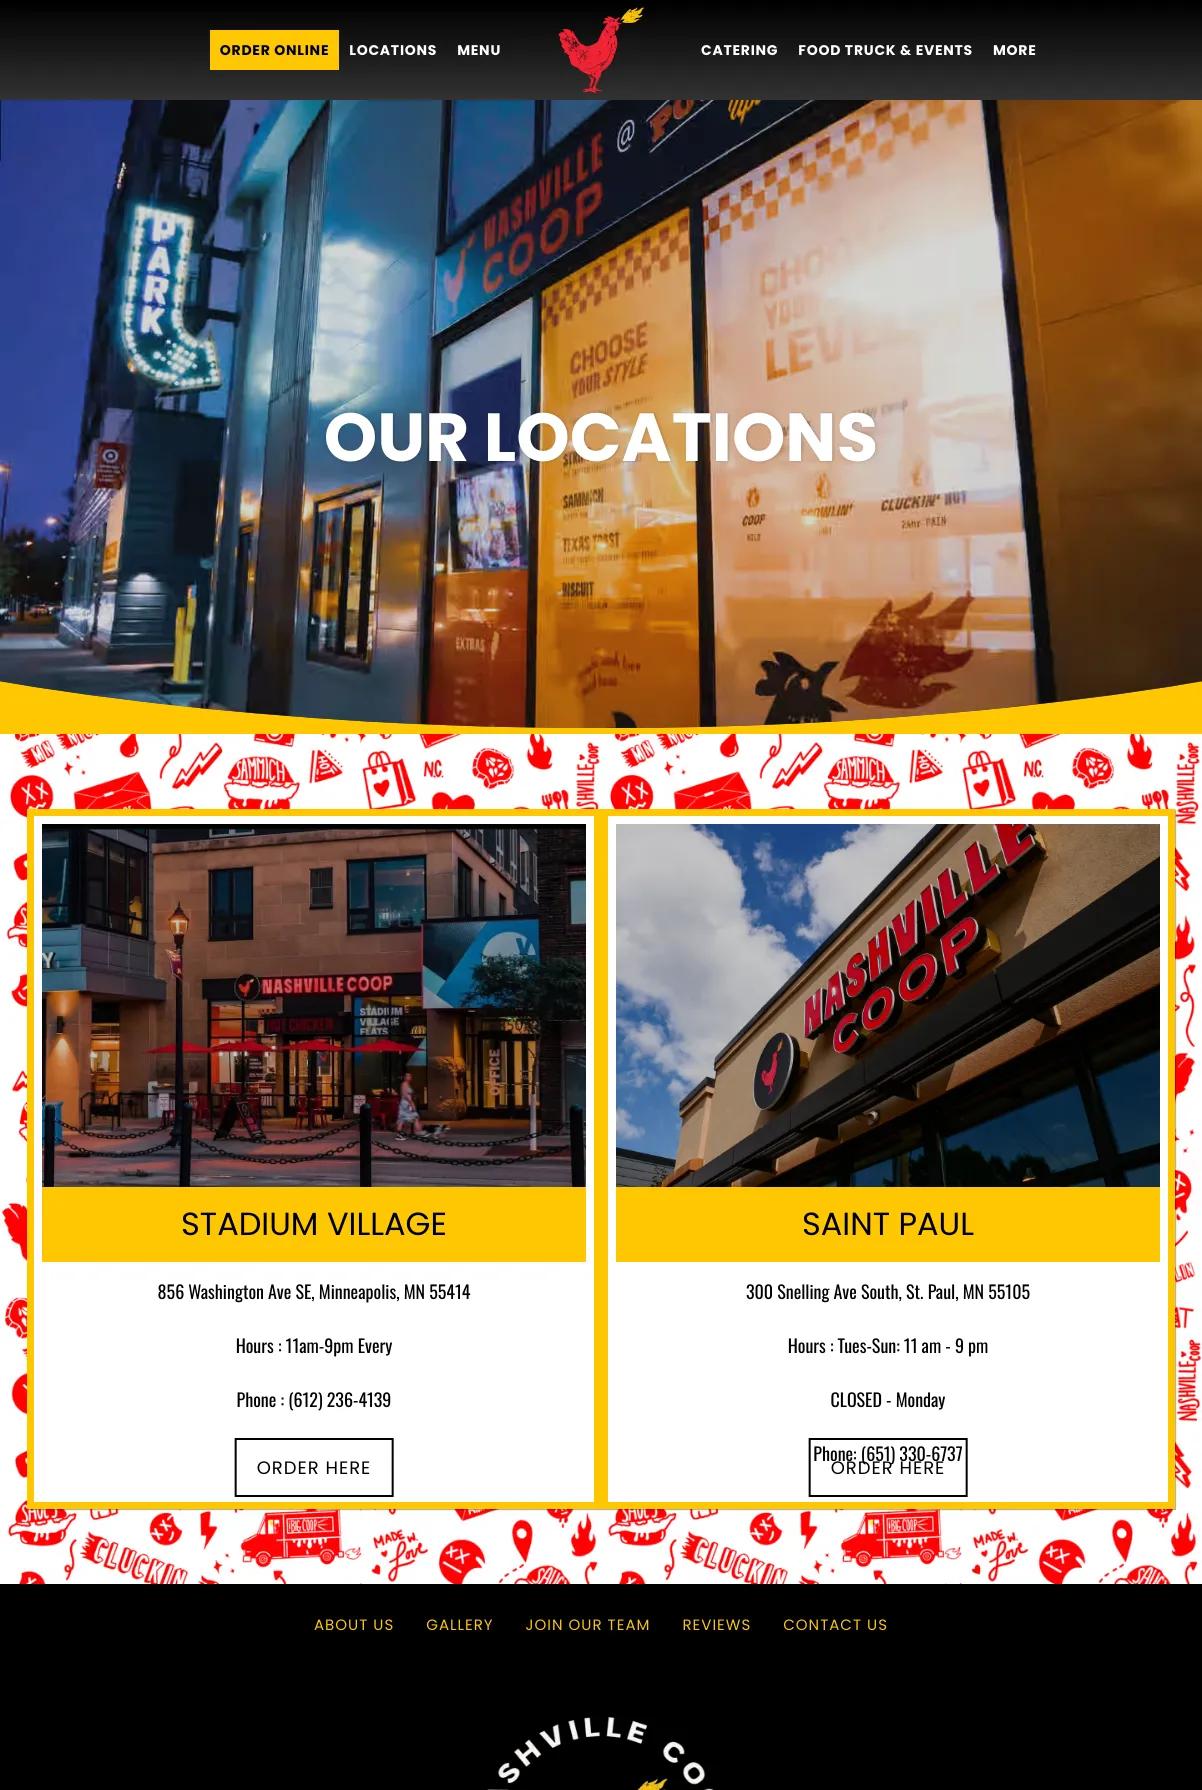 Screenshot 2 of NashvilleCoop (Example Squarespace Restaurant Website)